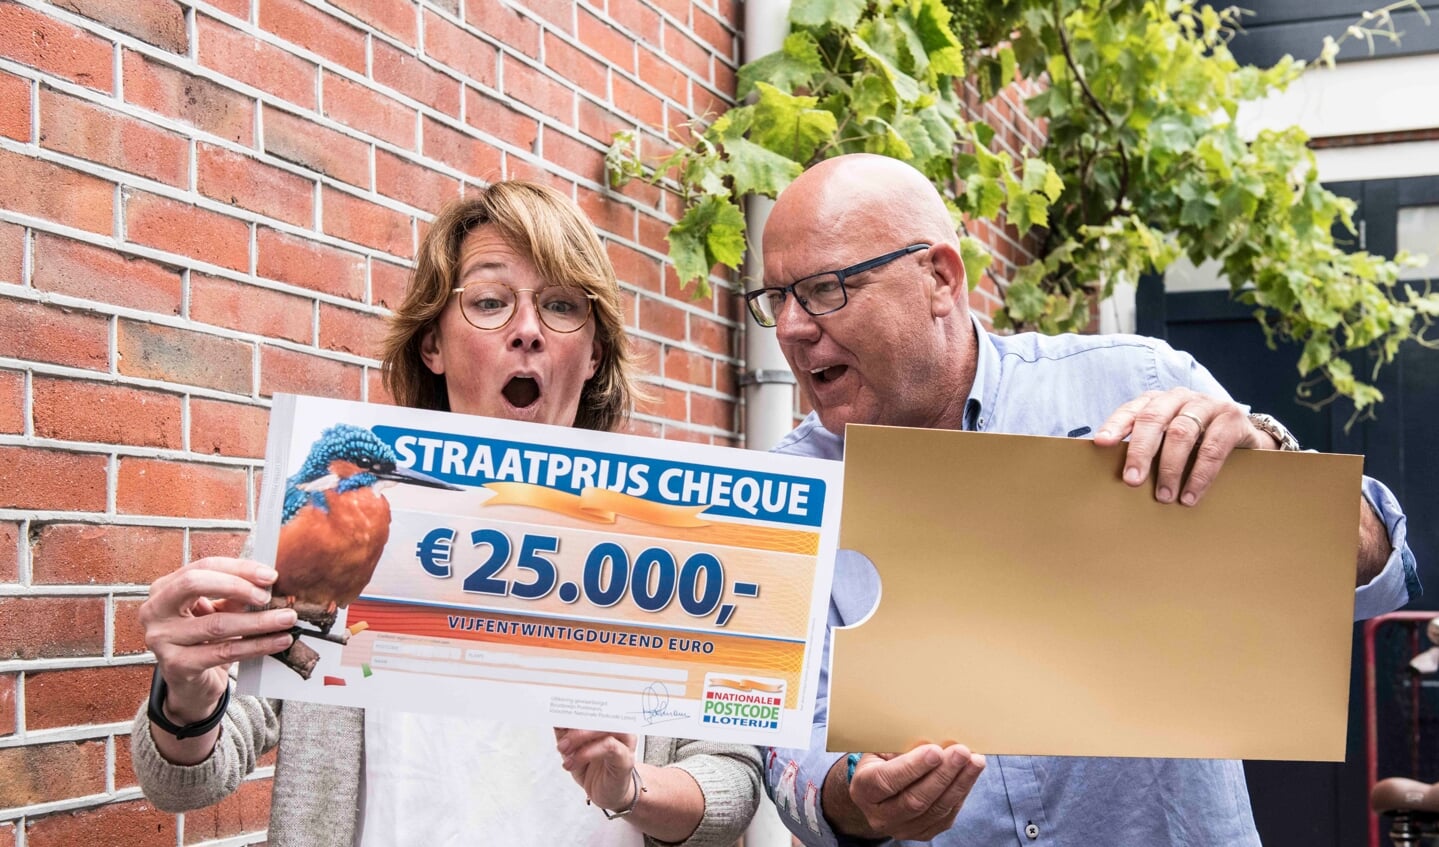 Bregje uit Oegstgeest wordt verrast door Postcode Loterij-ambassadeur Gaston Starreveld met de PostcodeStraatprijs-cheque. | Foto Jurgen Jacob Lodder